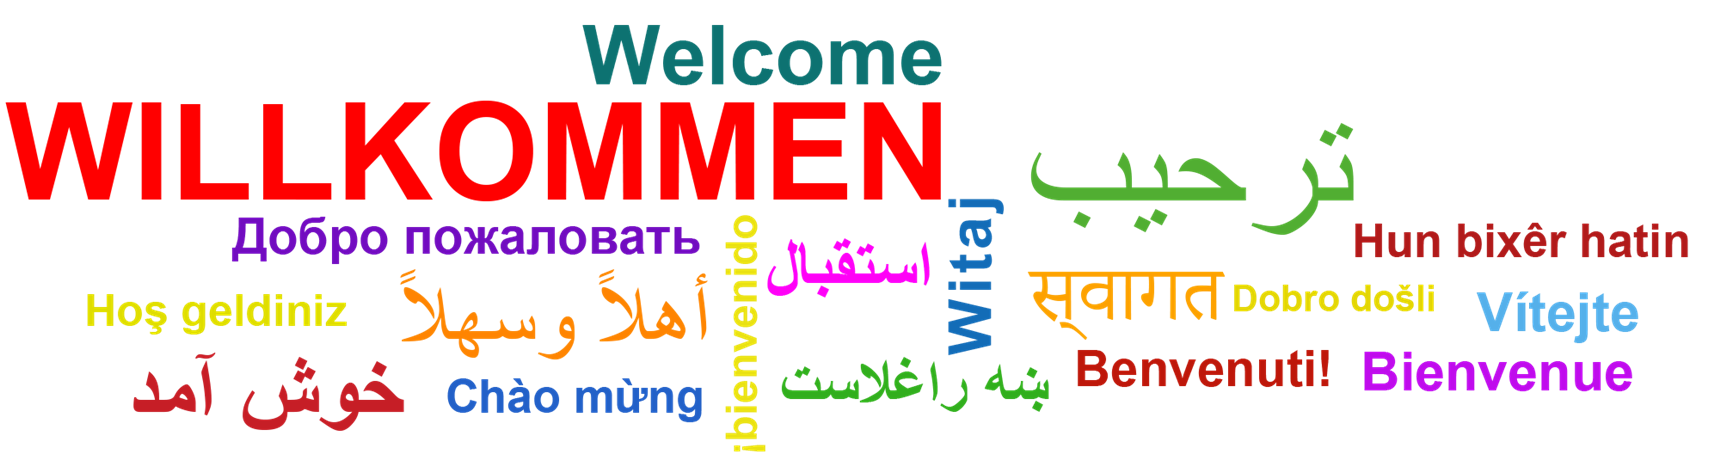 Das Wort "Willkommen" in vielen Sprachen